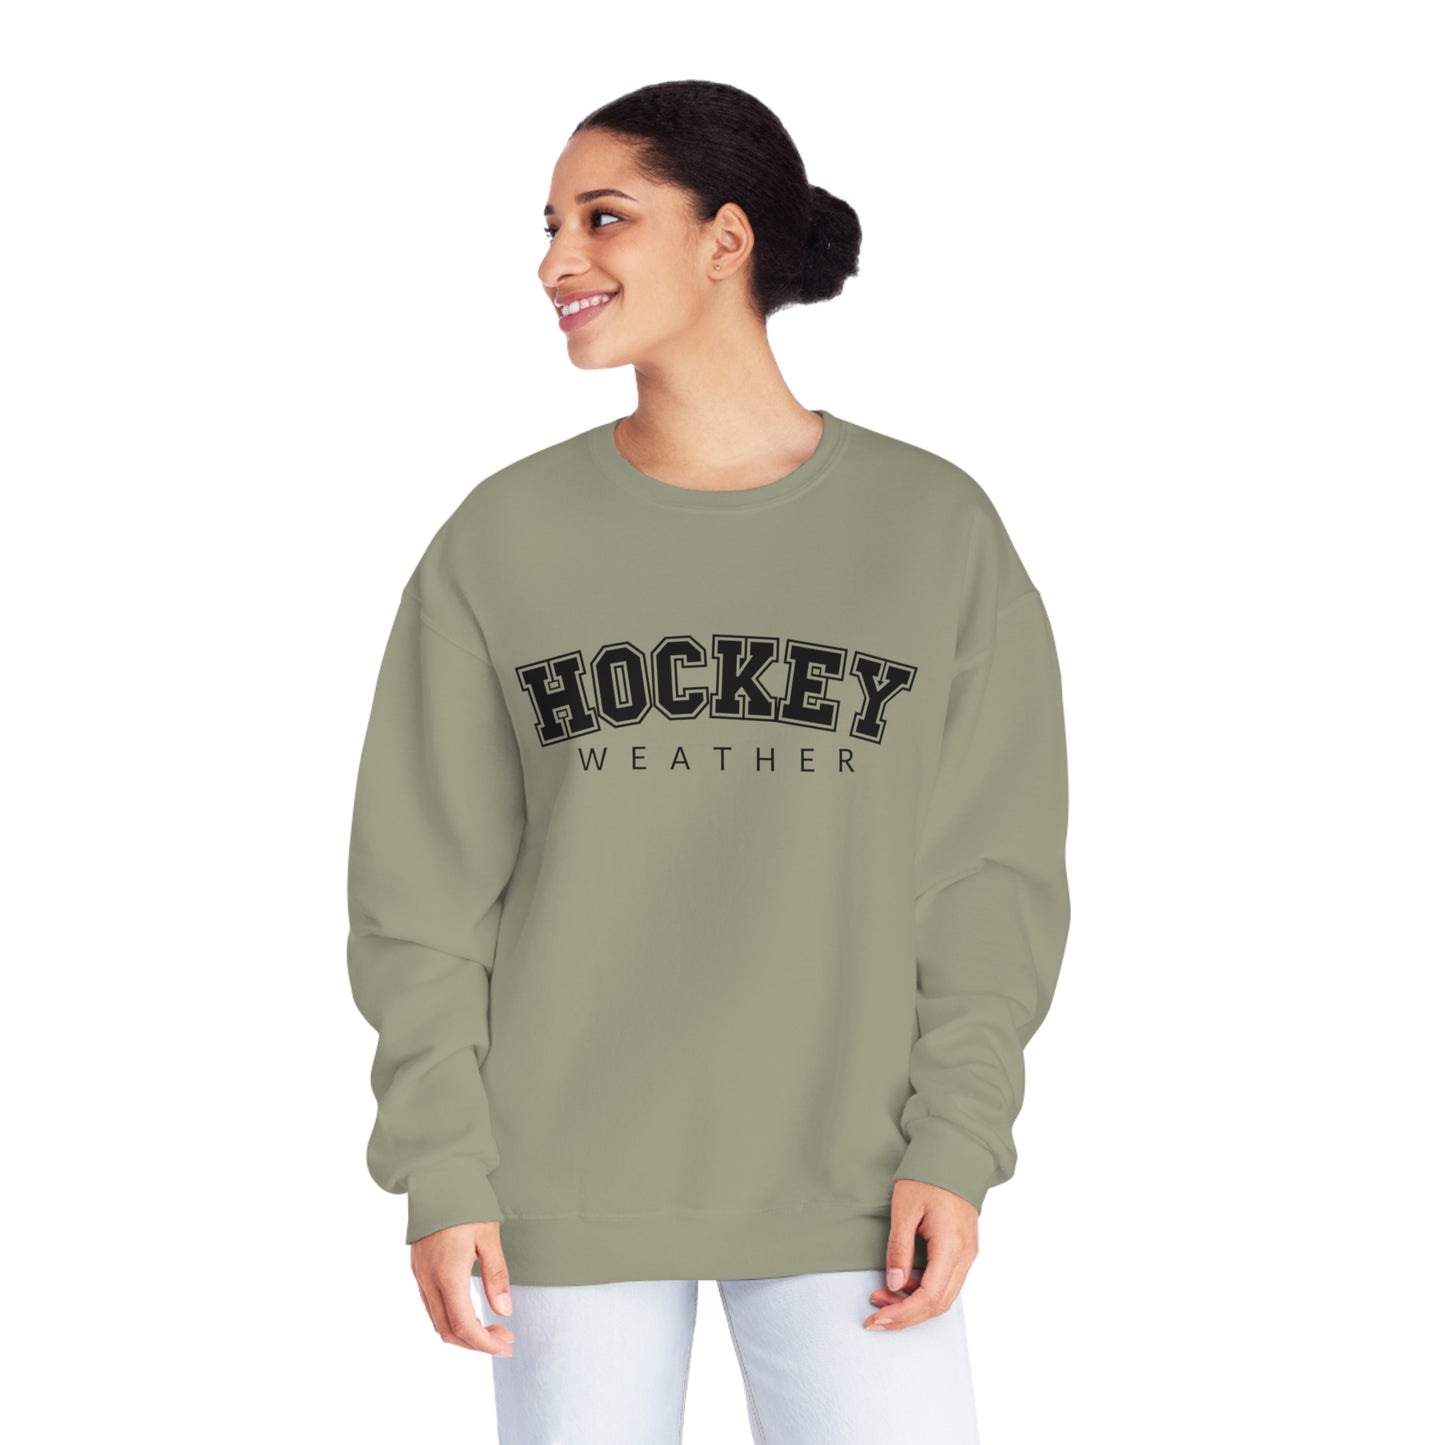 Hockey Weather Unisex Jerzees Crewneck Sweatshirt